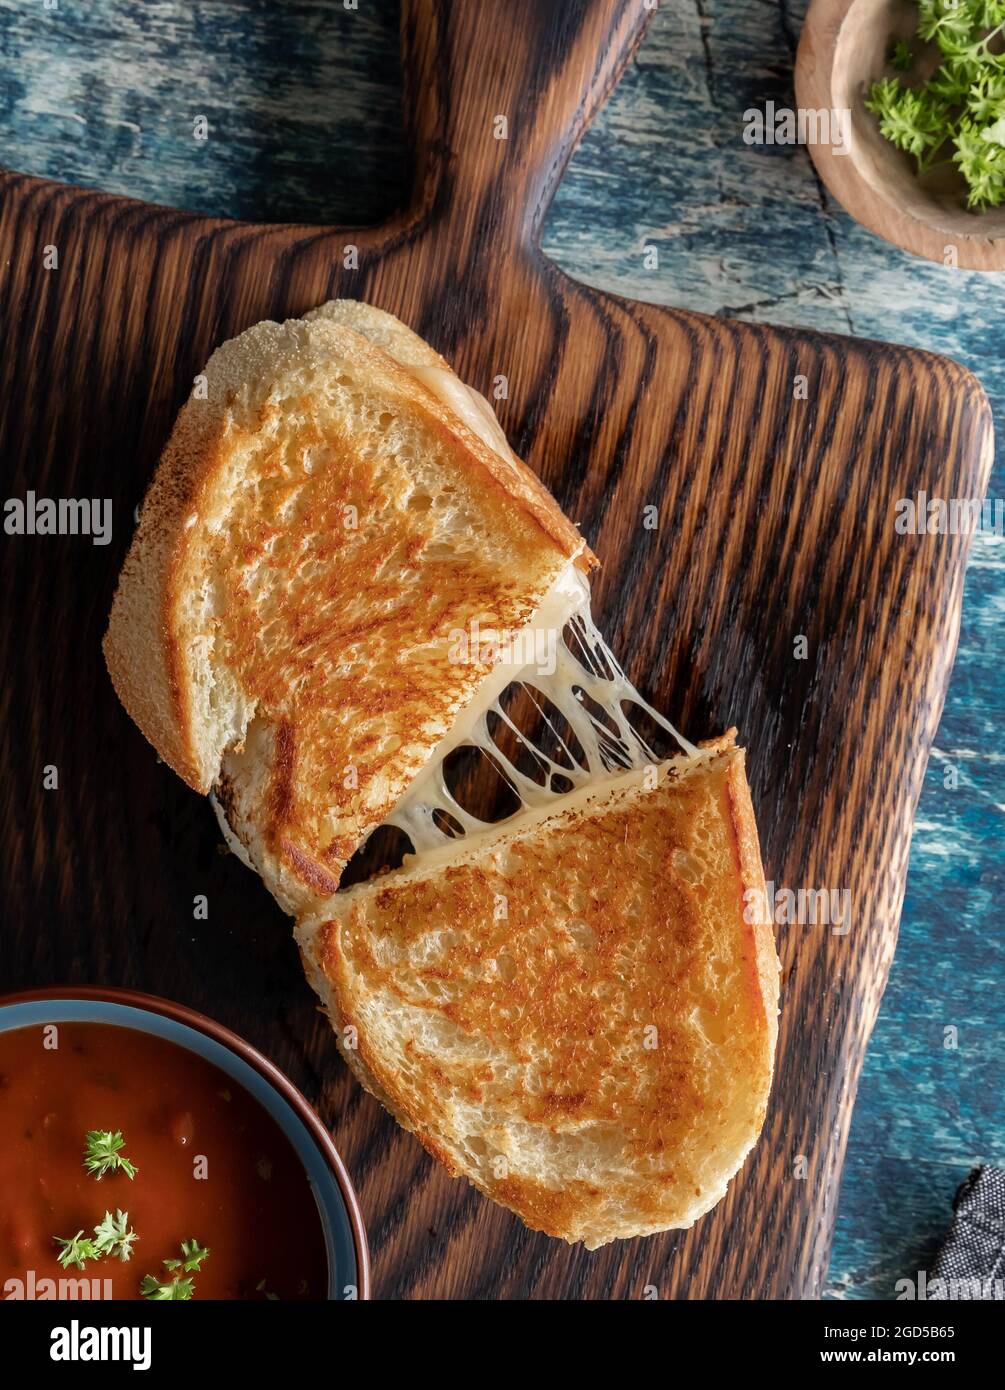 Vue de haut en bas d'un sandwich au fromage grillé fait maison sur une planche de bois, servi avec une soupe de tomates. Banque D'Images